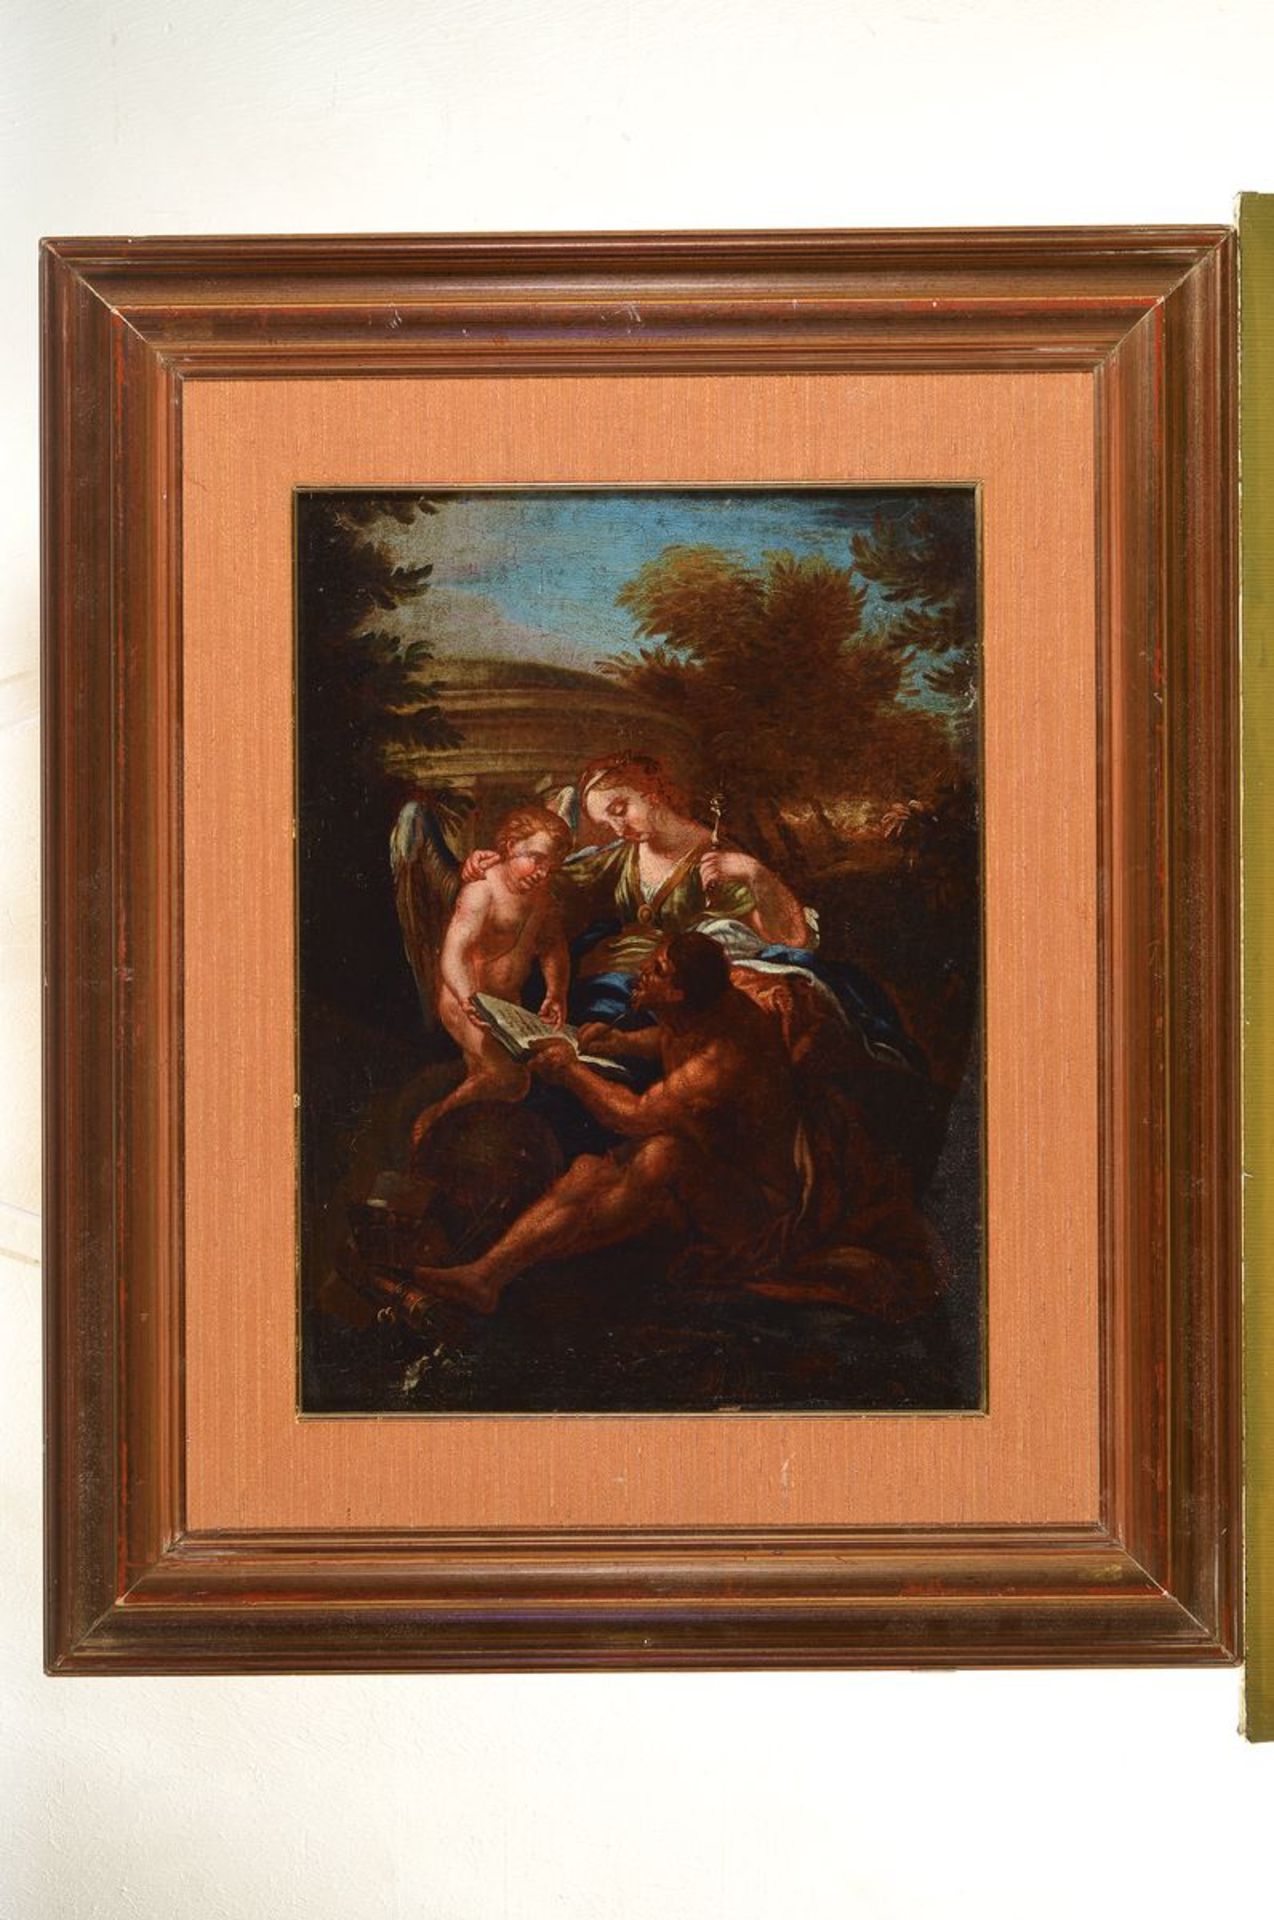 Italienischer Künstler des 17. Jh., , Allegorie auf die Malerei, Öl/Lwd, doubliert, krakeliert, - Bild 2 aus 2